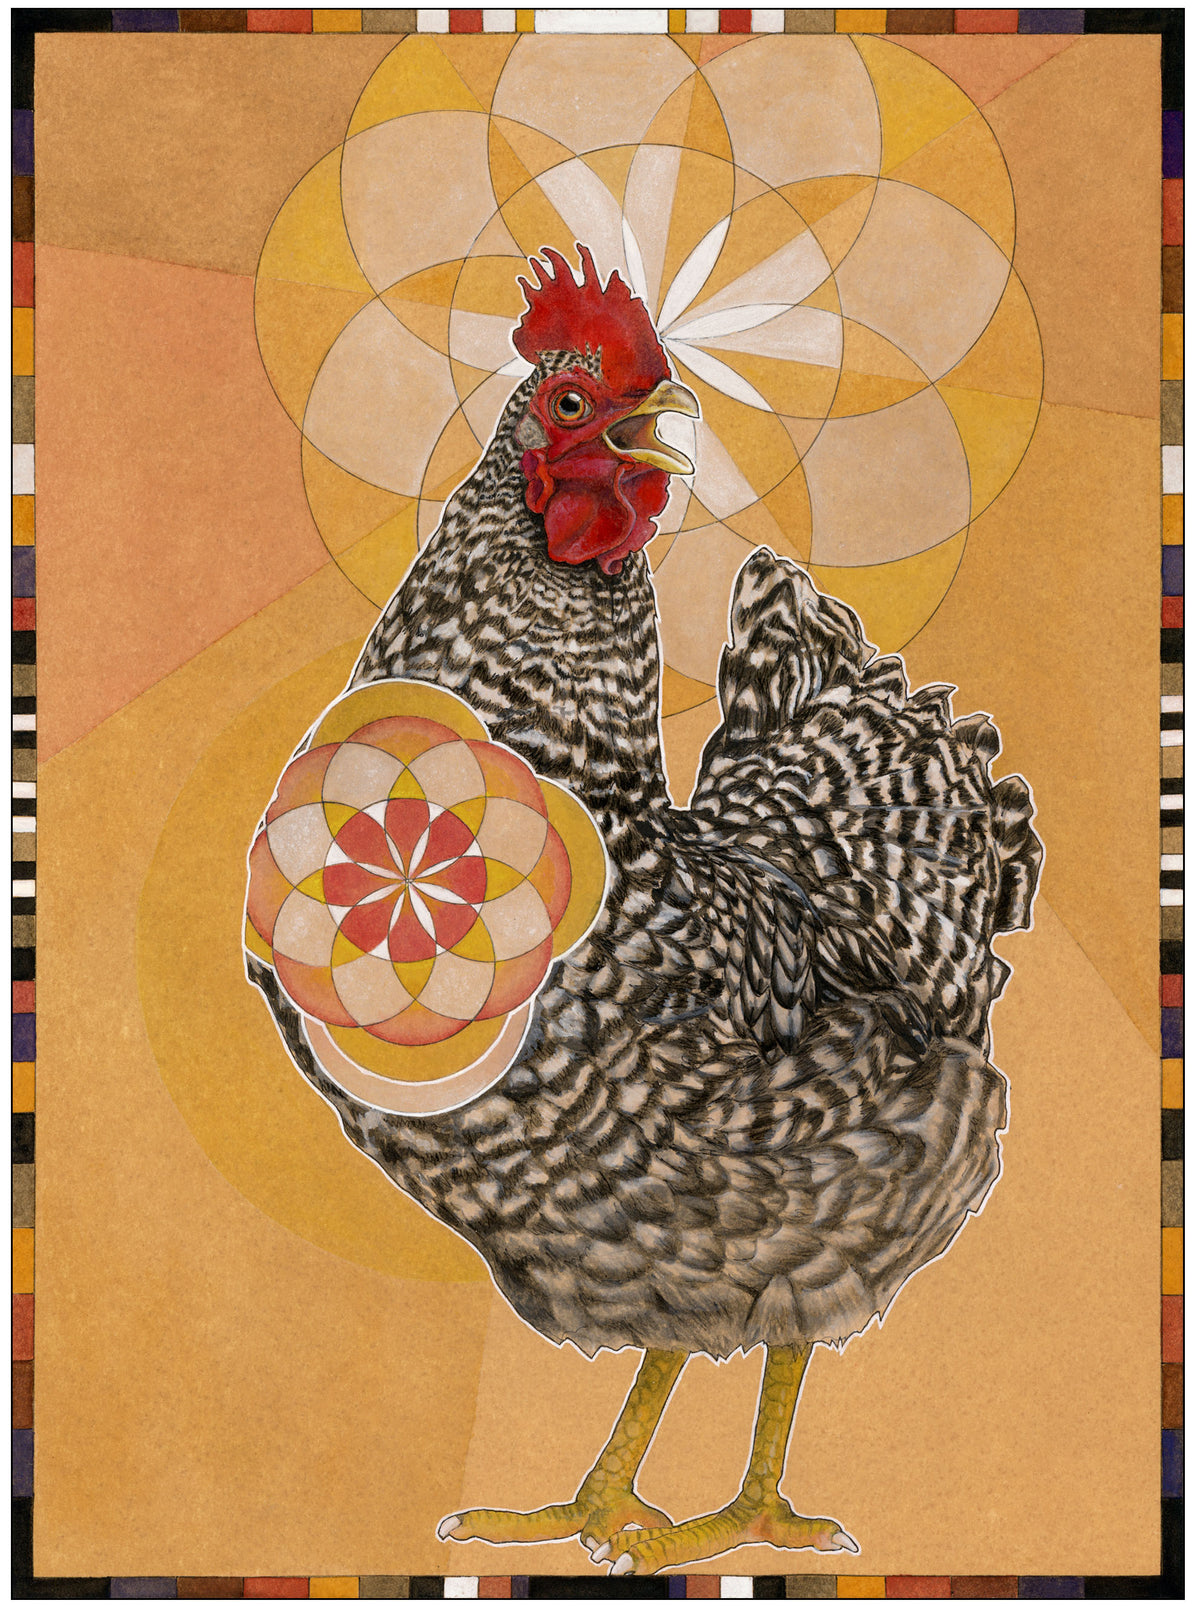 Chicken Print